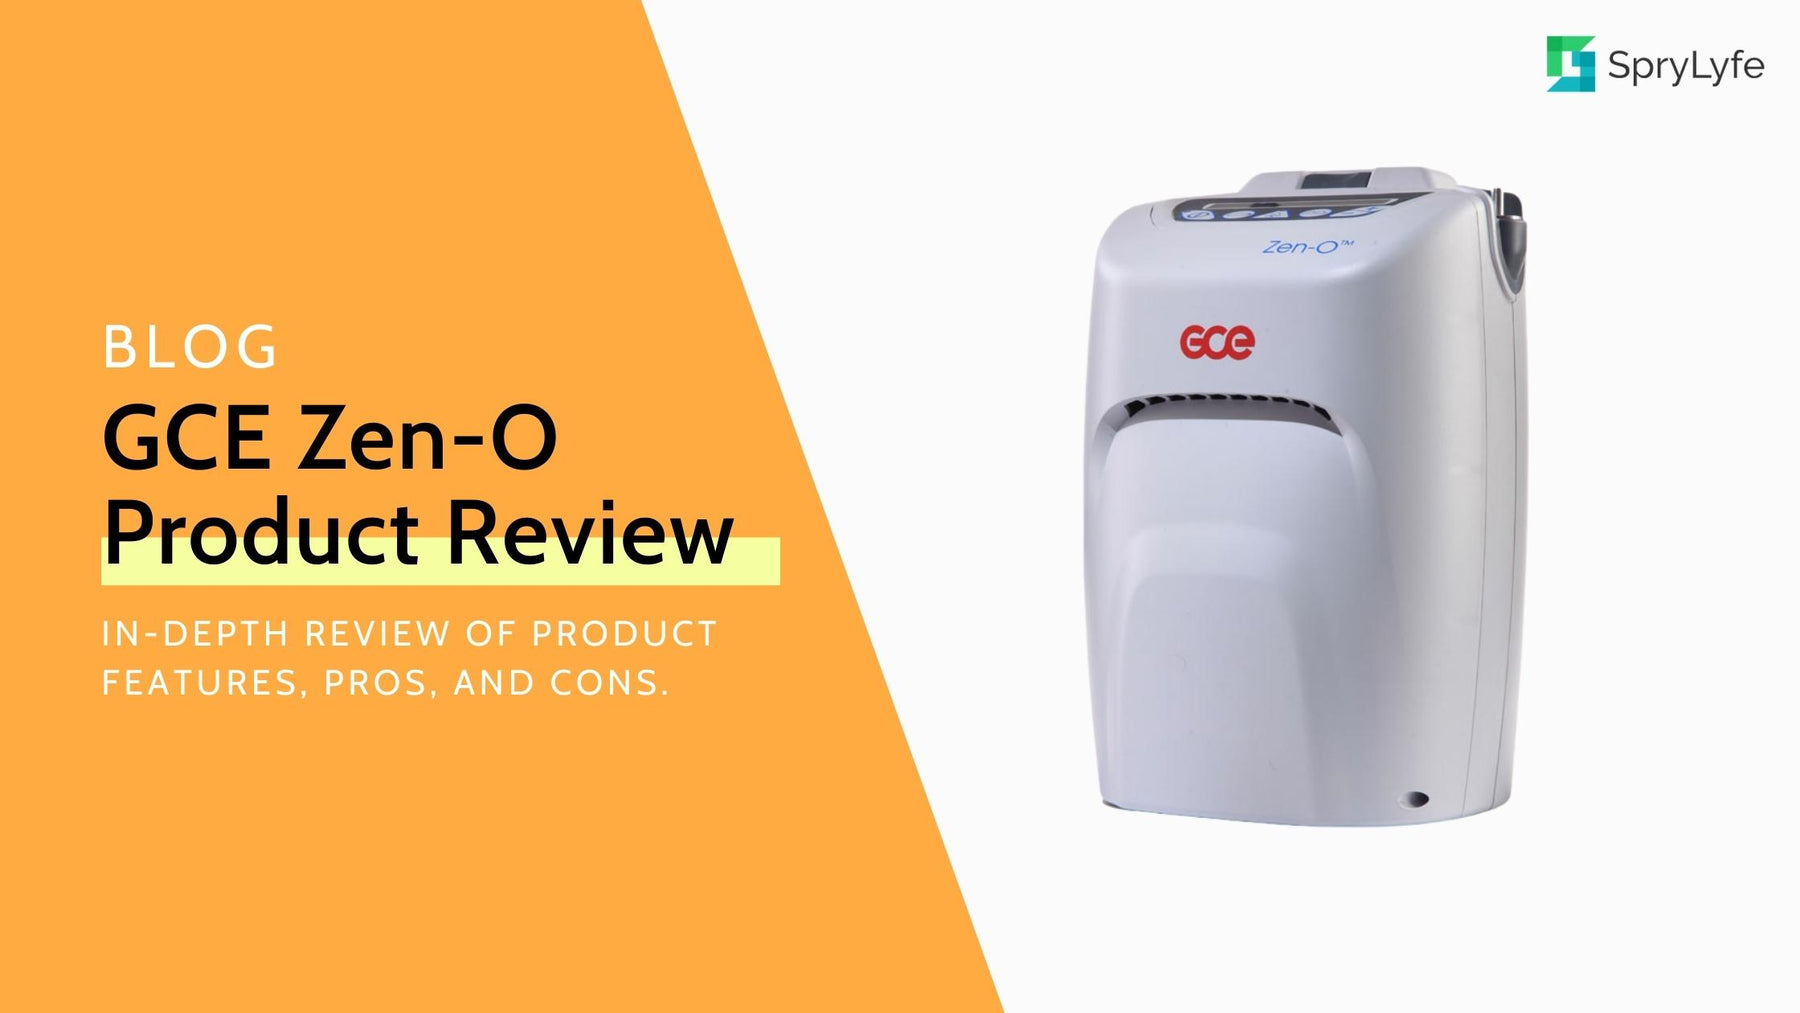 GCE Zen-O Portable Oxygen Concentrator Review